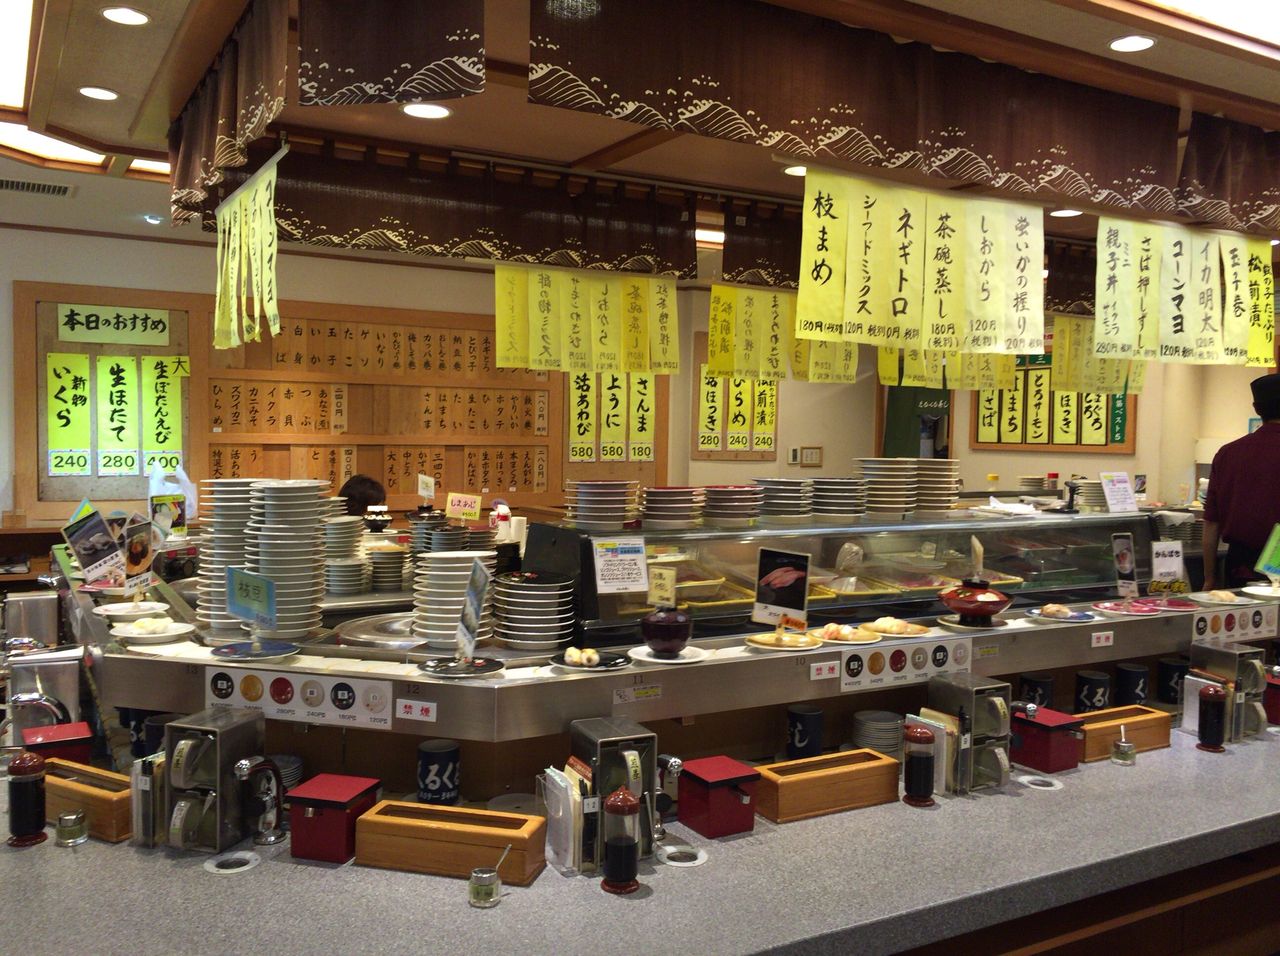 くるくる寿司 札幌駅 根室花まるの対抗馬 おいしく回転寿司をいただく かなちゅうごはん